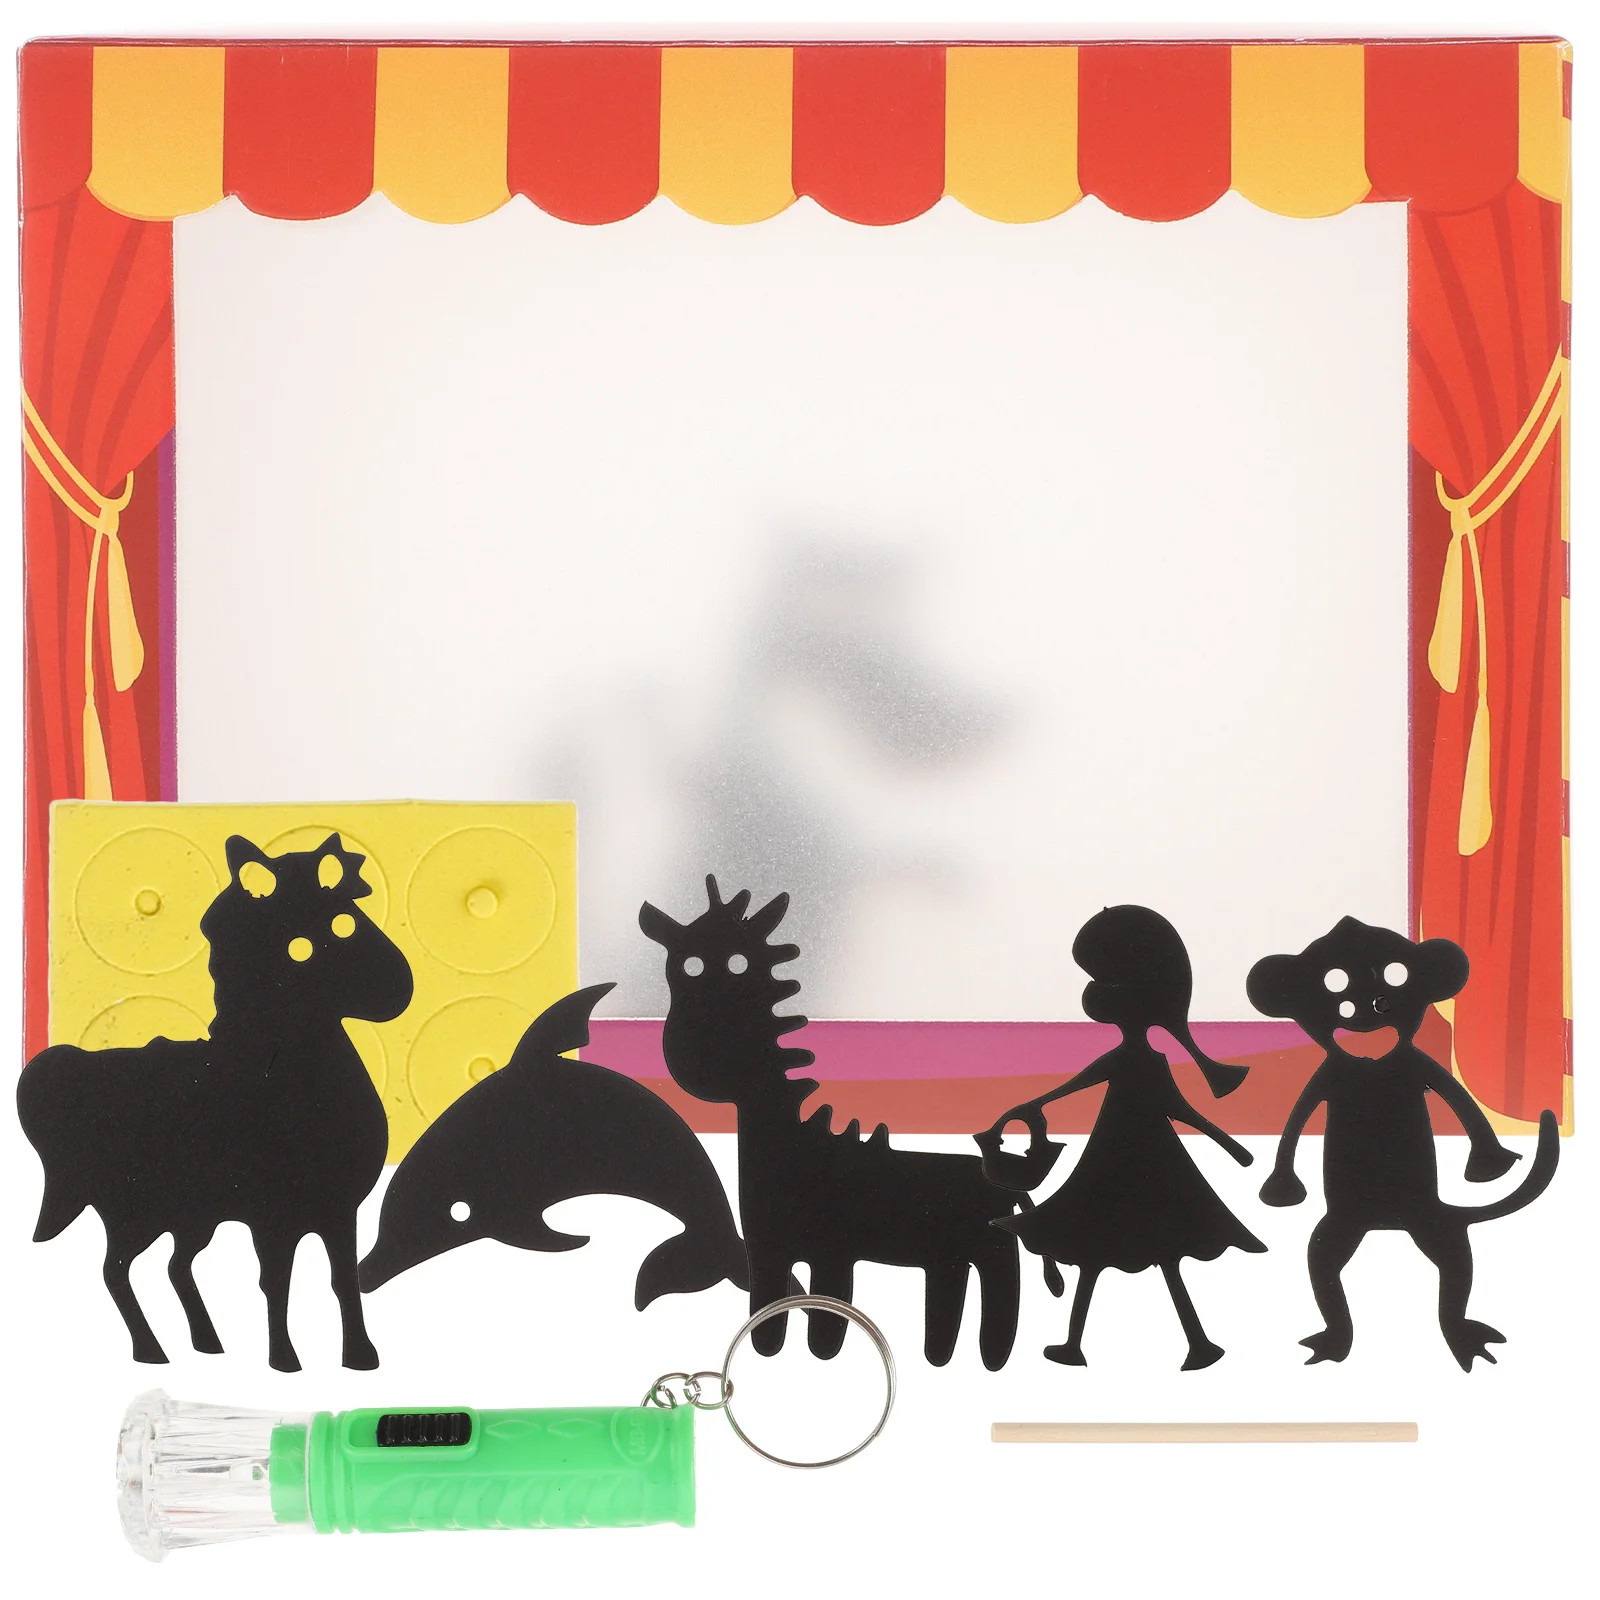 Sombras de animais de gestos conceito de teatro de sombras vintage jogo de  mão fantoche teatral imaginação humana idéia criativa show de luzes jogo  animais elementos engenhoso ilustração vetorial